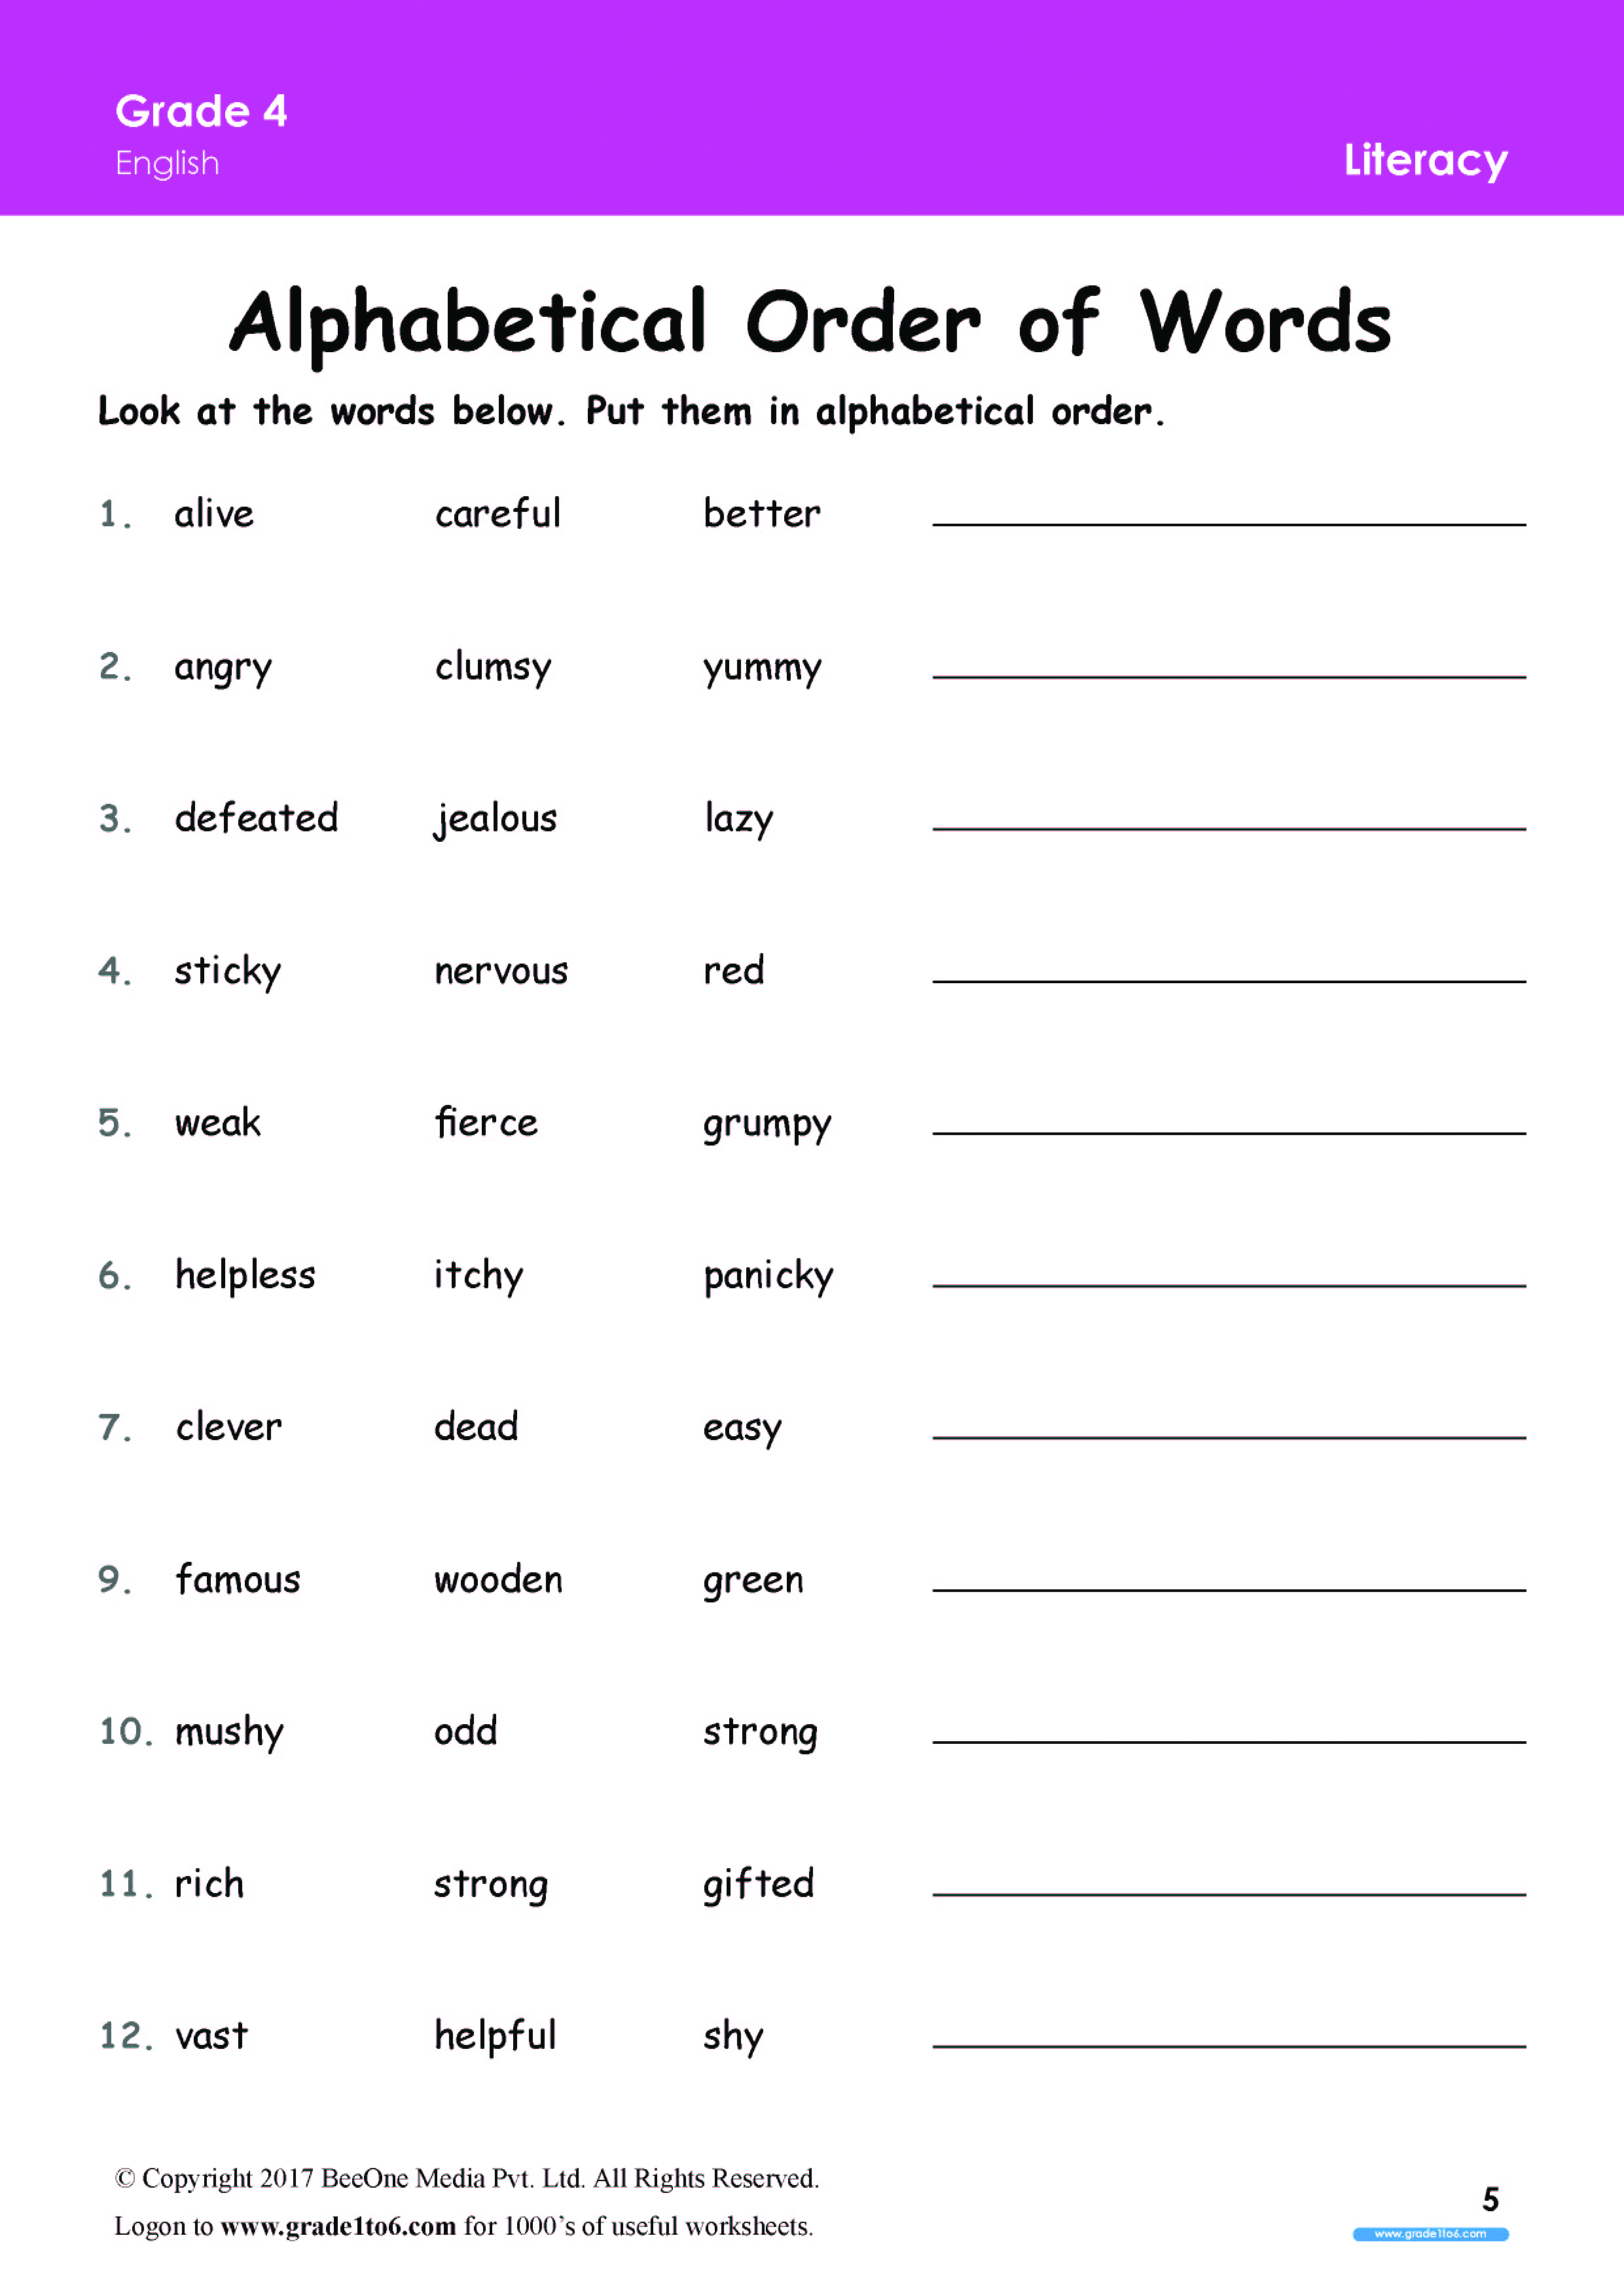 Alphabetical Order Words Worksheet